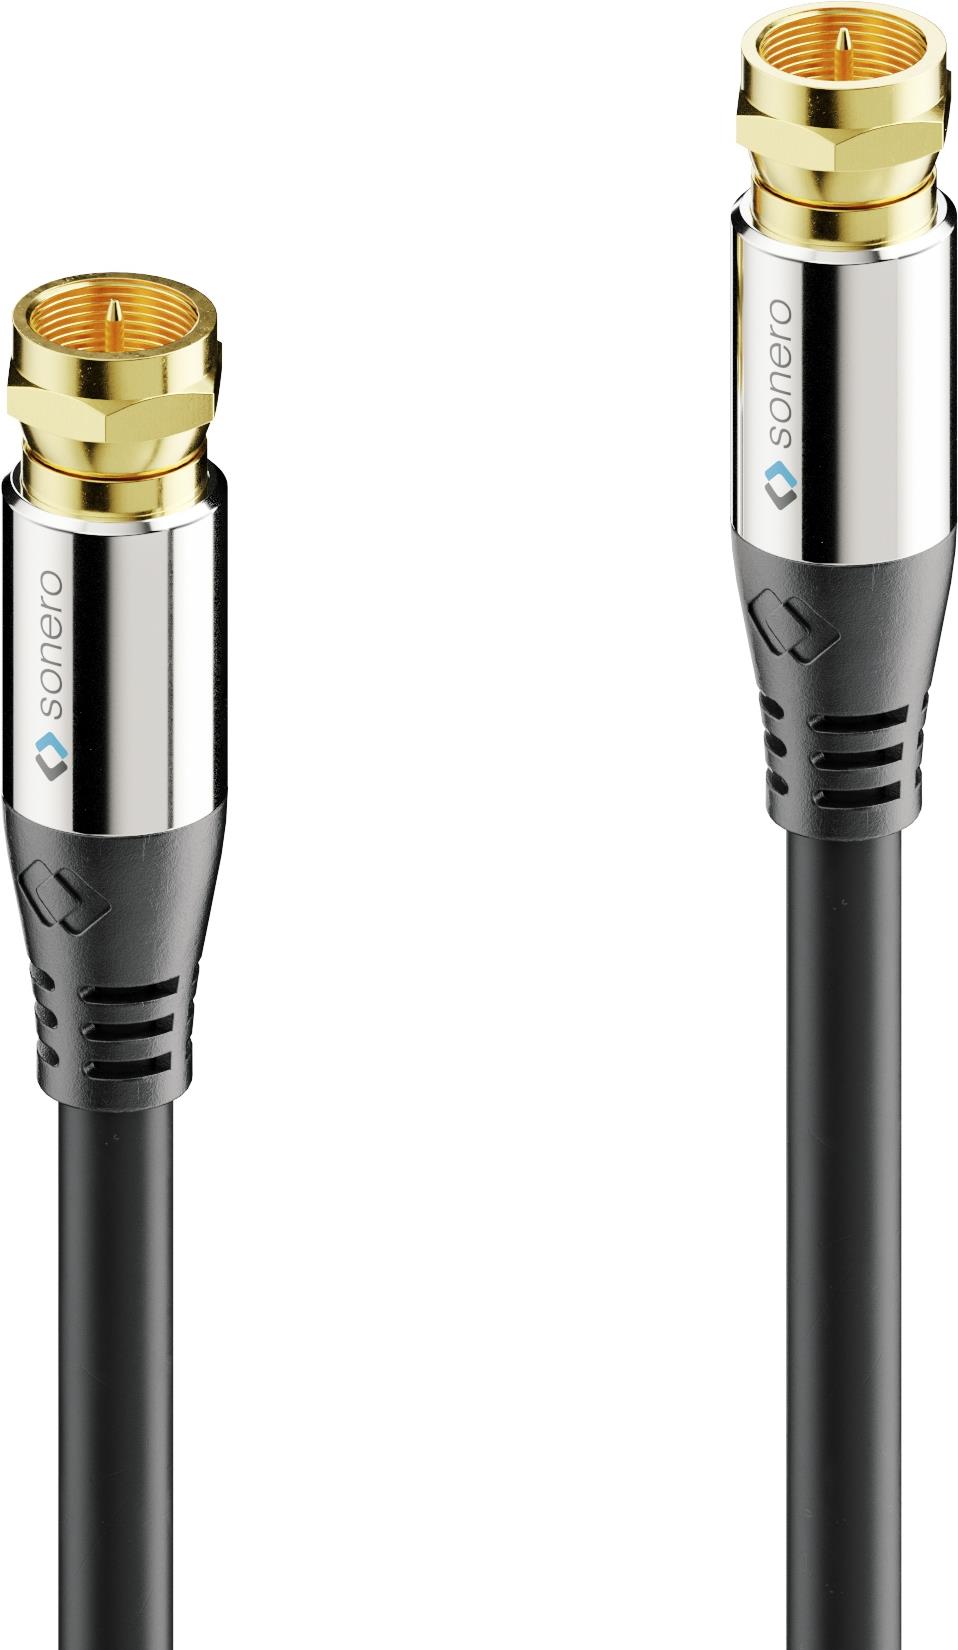 PURELINK Sonero Antennen-Kabel 7,5m S-SC000-075 Premium,F-Stecker auf F-Stecker